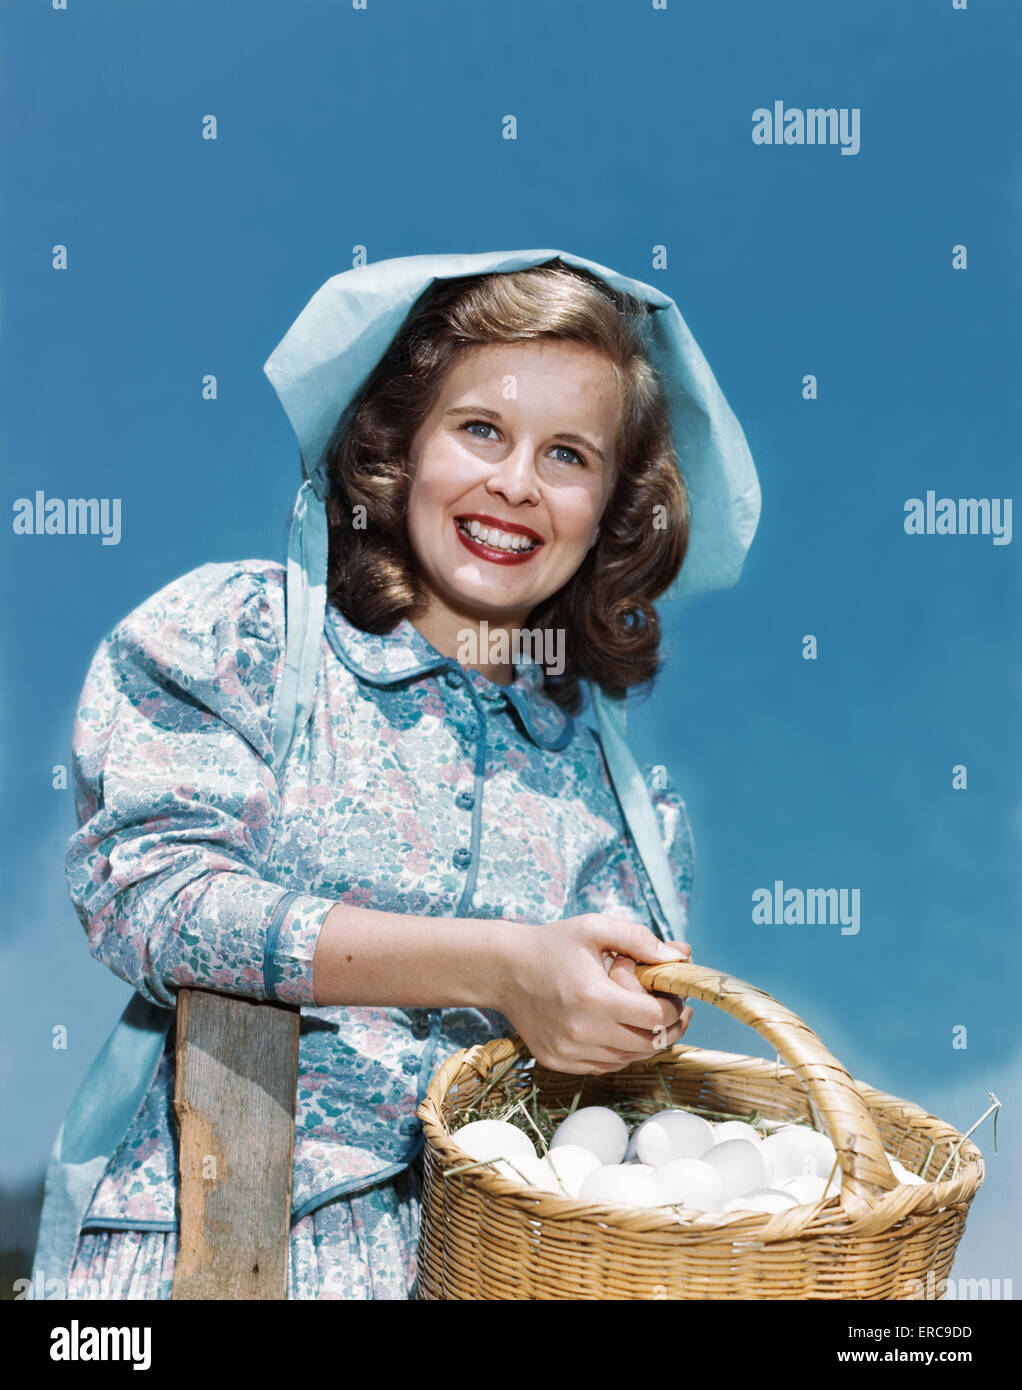 Negli anni quaranta anni cinquanta sorridente ragazza adolescente che indossa la ragazza di fattoria PIONEER OUTFIT ABITO CALICO COFANO cestello di contenimento di uova Foto Stock